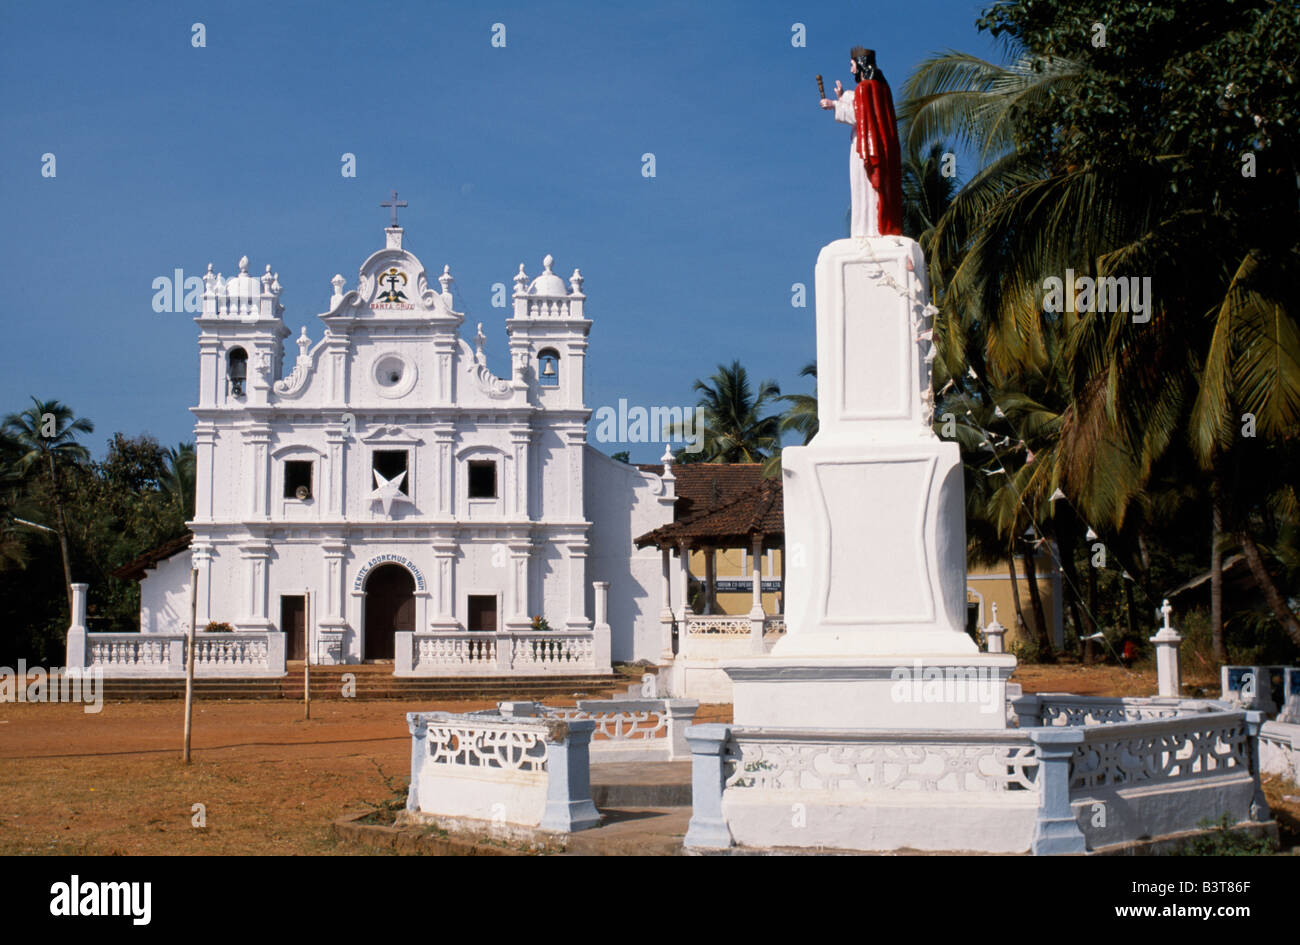 Indien, Goa, Cavelossim. Die malerische weiß getünchte Kirche im Dorf Cavelossim. Weiß getünchten Kirchen sind eines der Symbol von Goa und ein Erbe der Portugiesen. Stockfoto